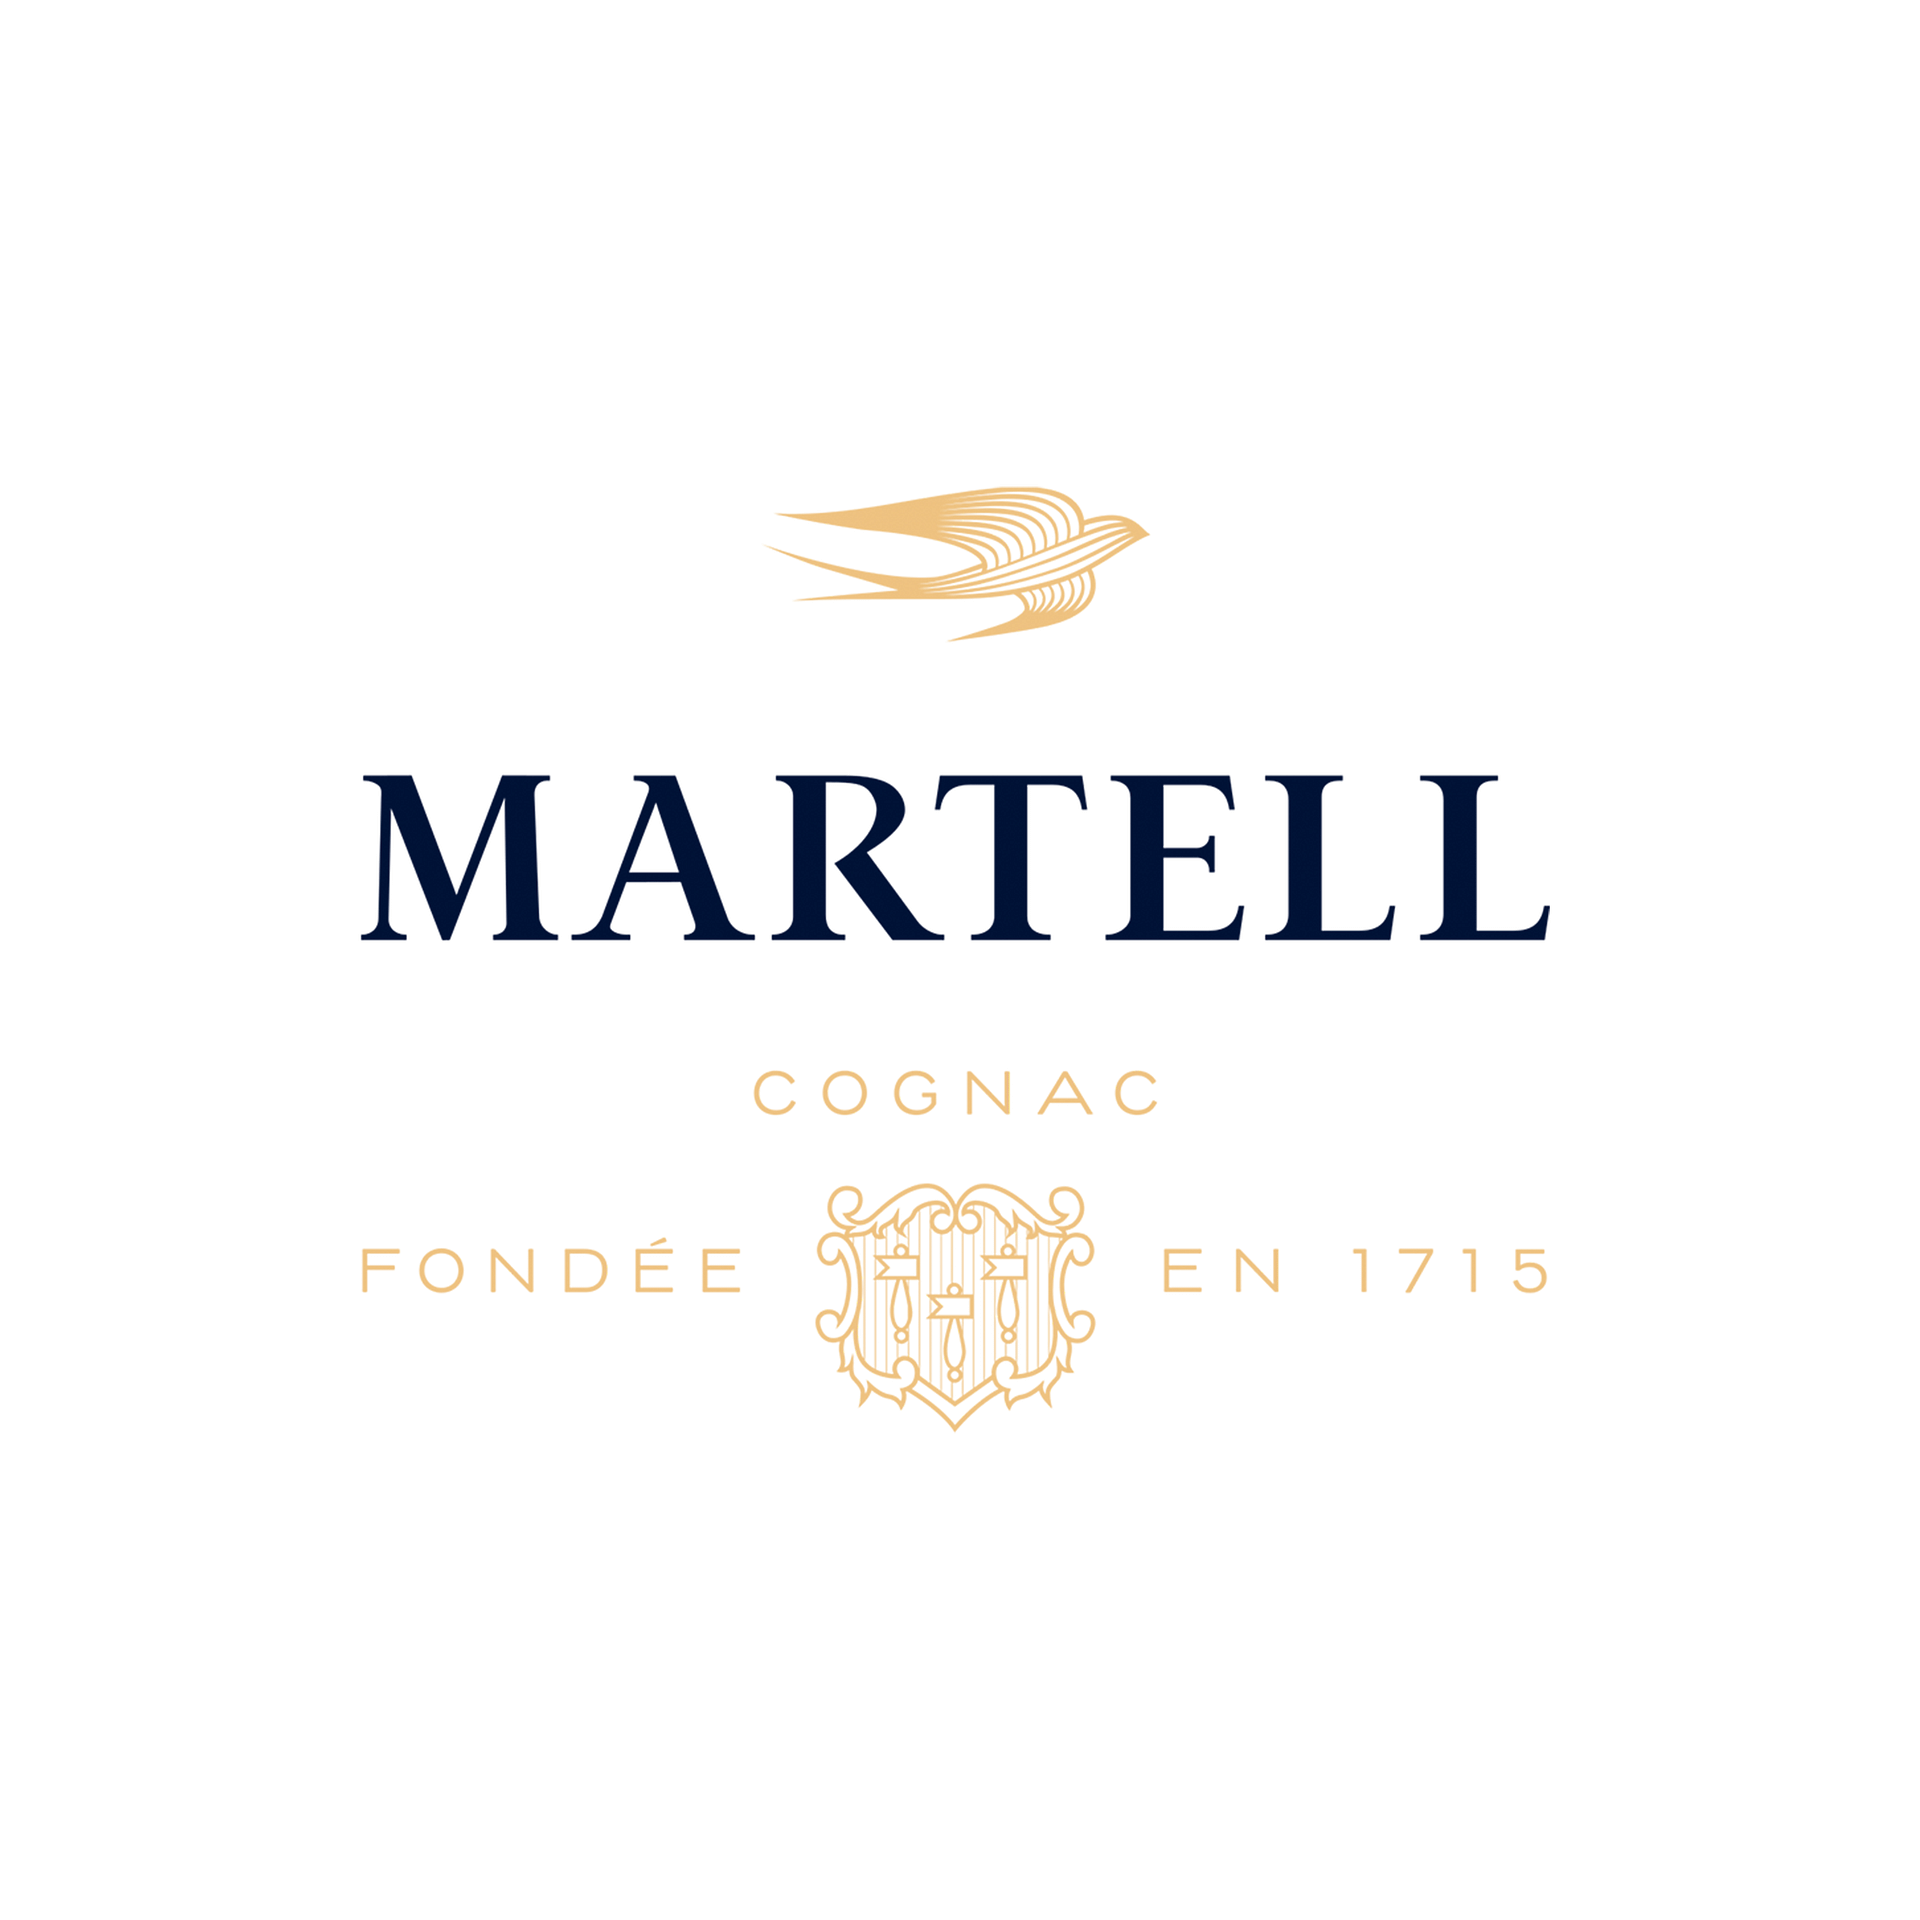 martell-logo-cognac